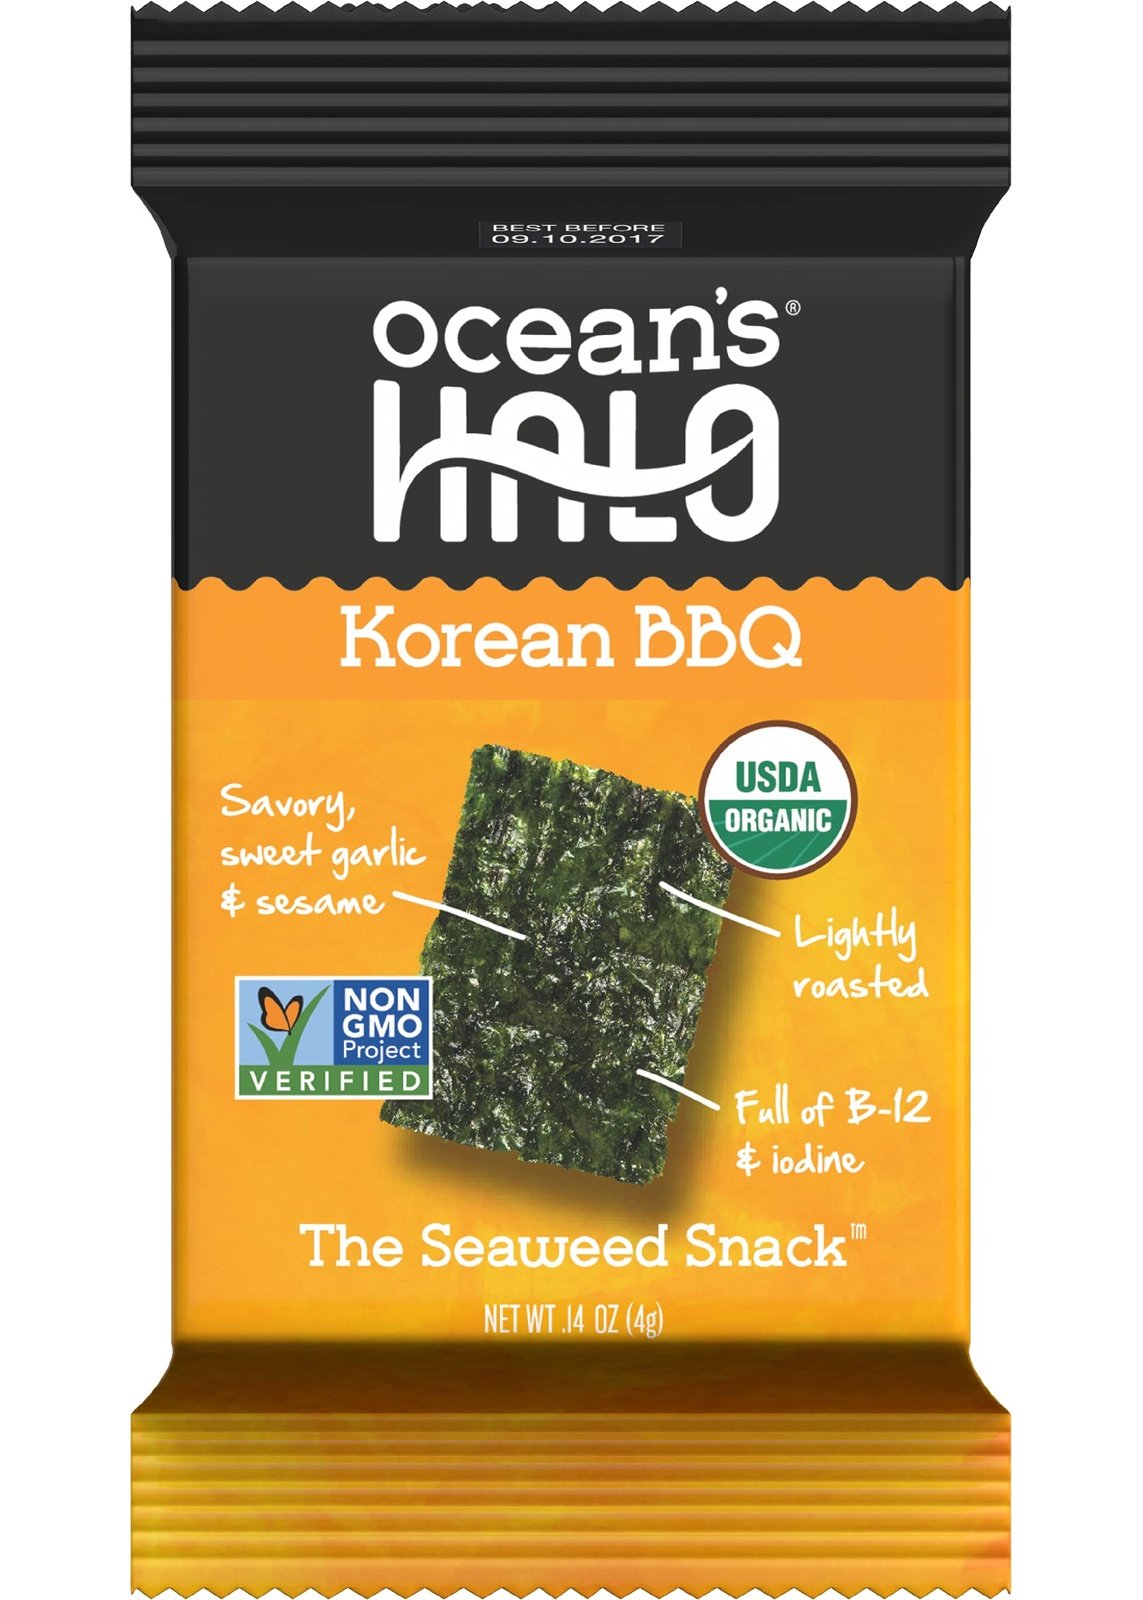 OCEAN'S HALO Korean BBQ Seaweed Snacks